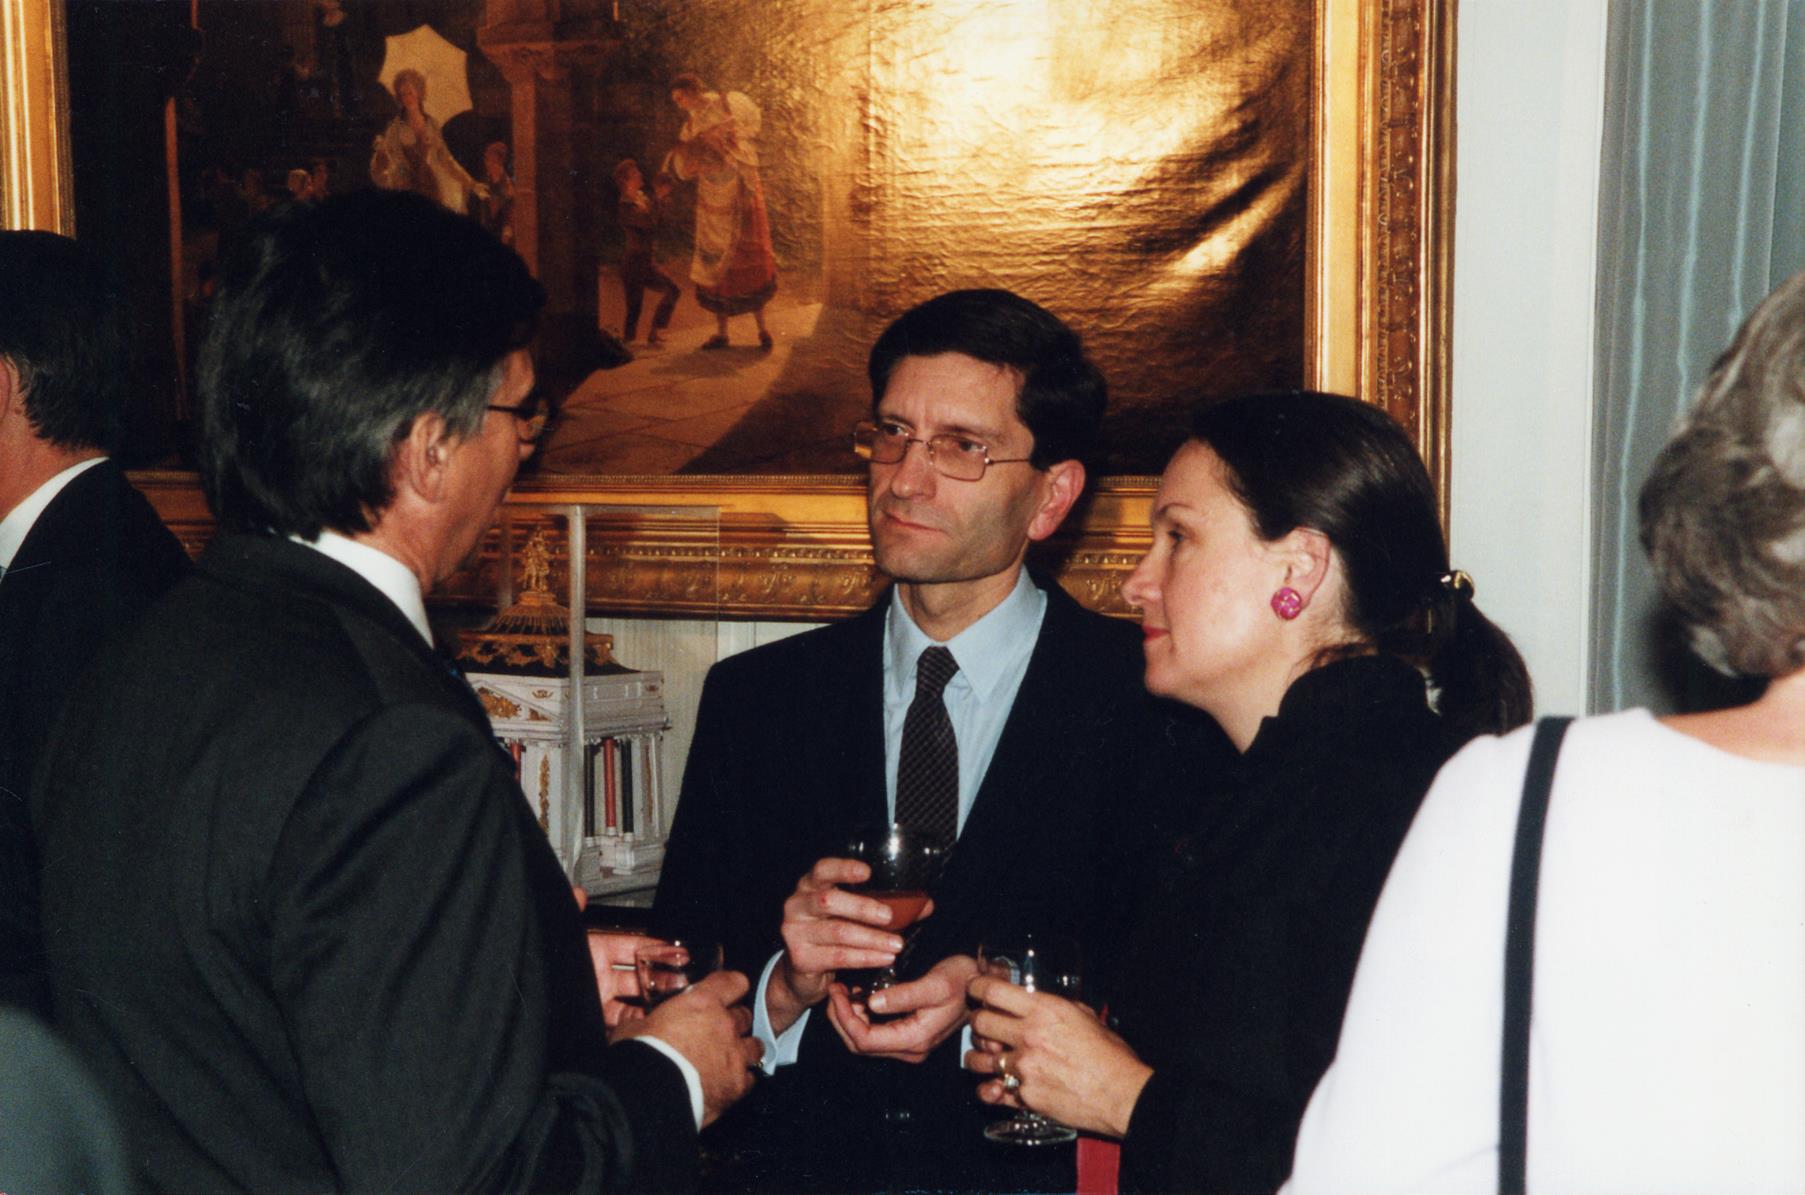 Jantar oferecido pelo Visconde de Rohan, presidente da Société des Amis de Versailles, no âmbito da exposição. João Castel-Branco Pereira e Amaury Lefébure